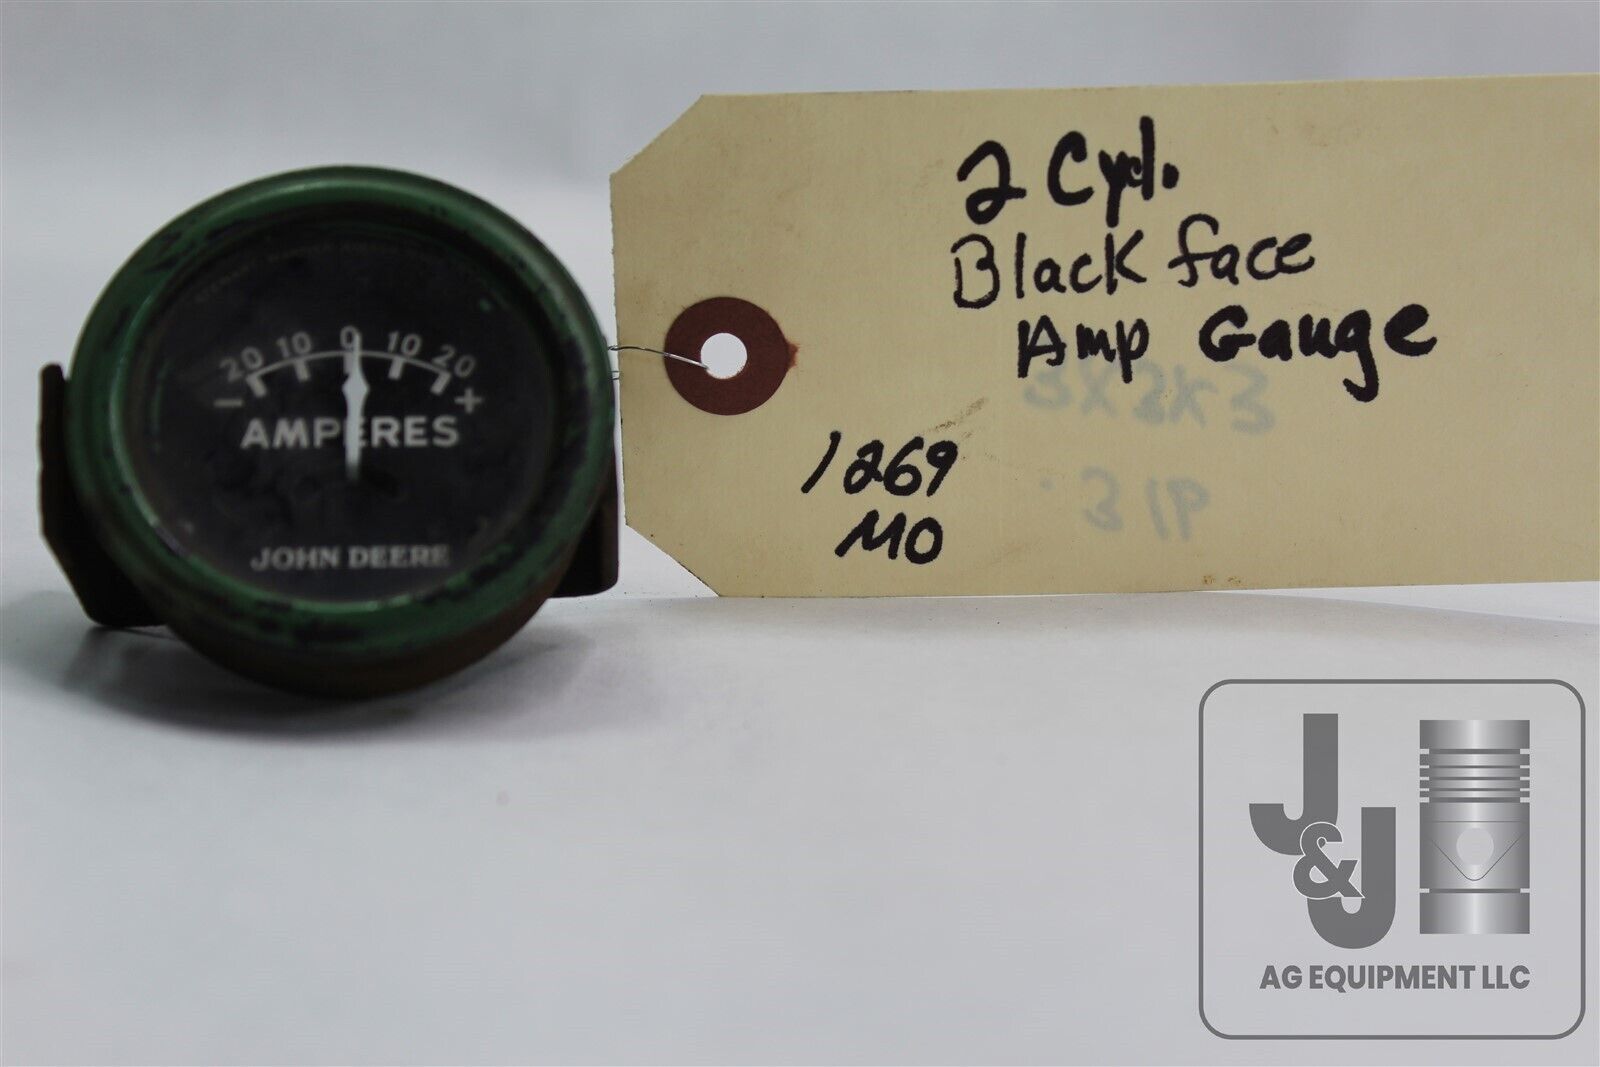 USED JOHN DEERE 2 CYLINDER BLACK FACE AMP GAUGE